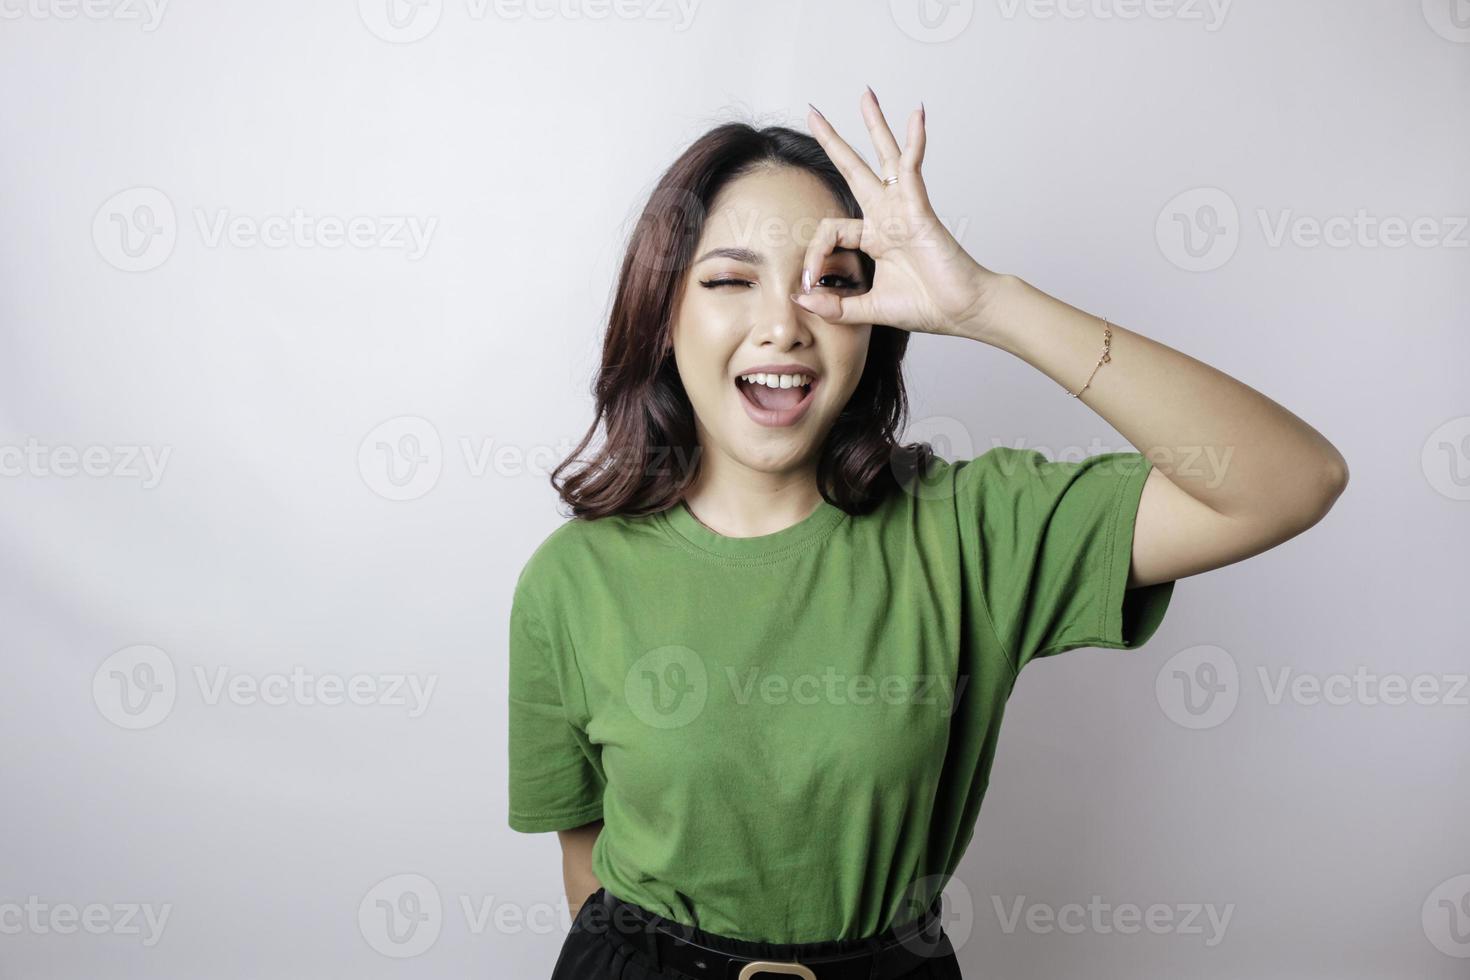 Aufgeregte asiatische Frau, die ein grünes T-Shirt trägt und eine ok-Handgeste gibt, die durch einen weißen Hintergrund isoliert wird foto